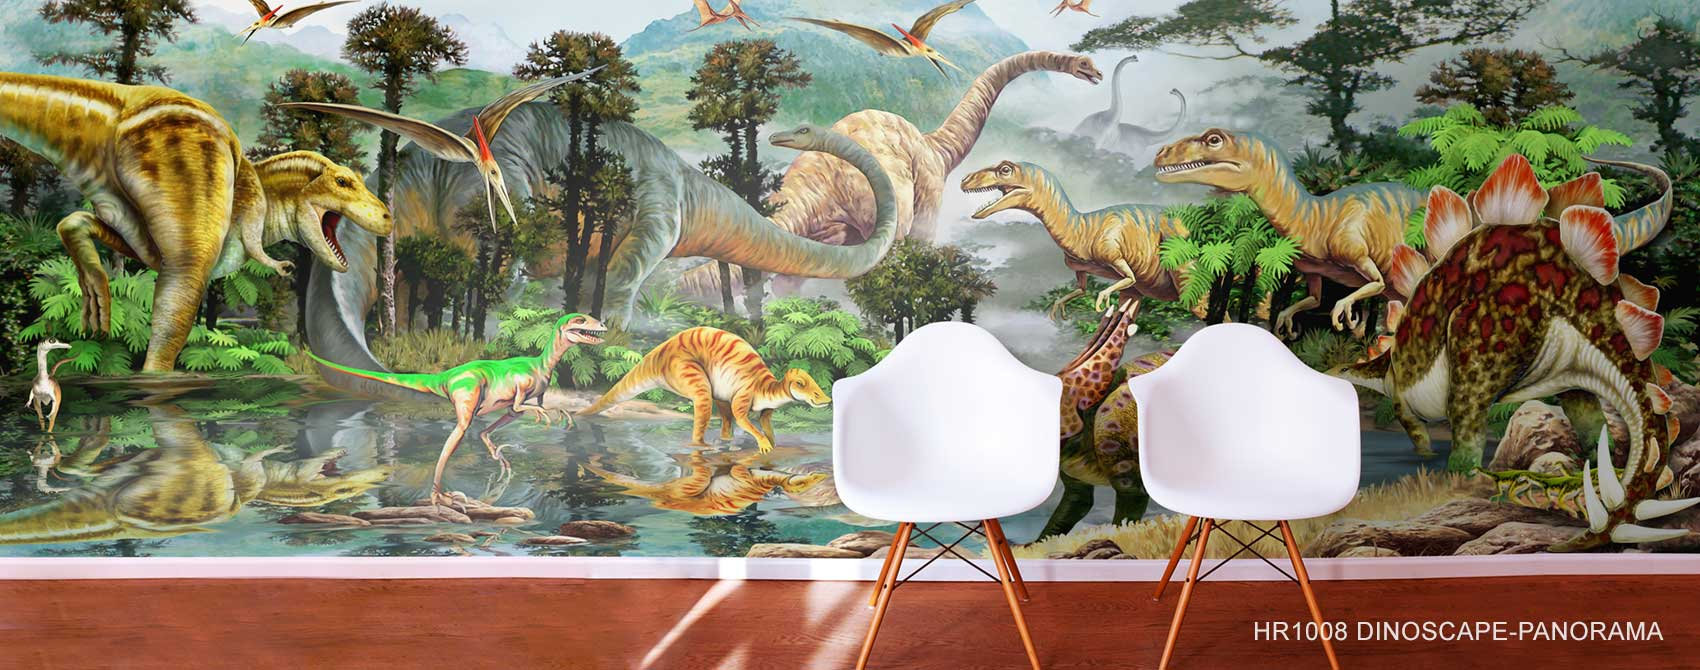 Dinosaur Wallpapers: Free HD Download [500+ HQ] | Unsplash